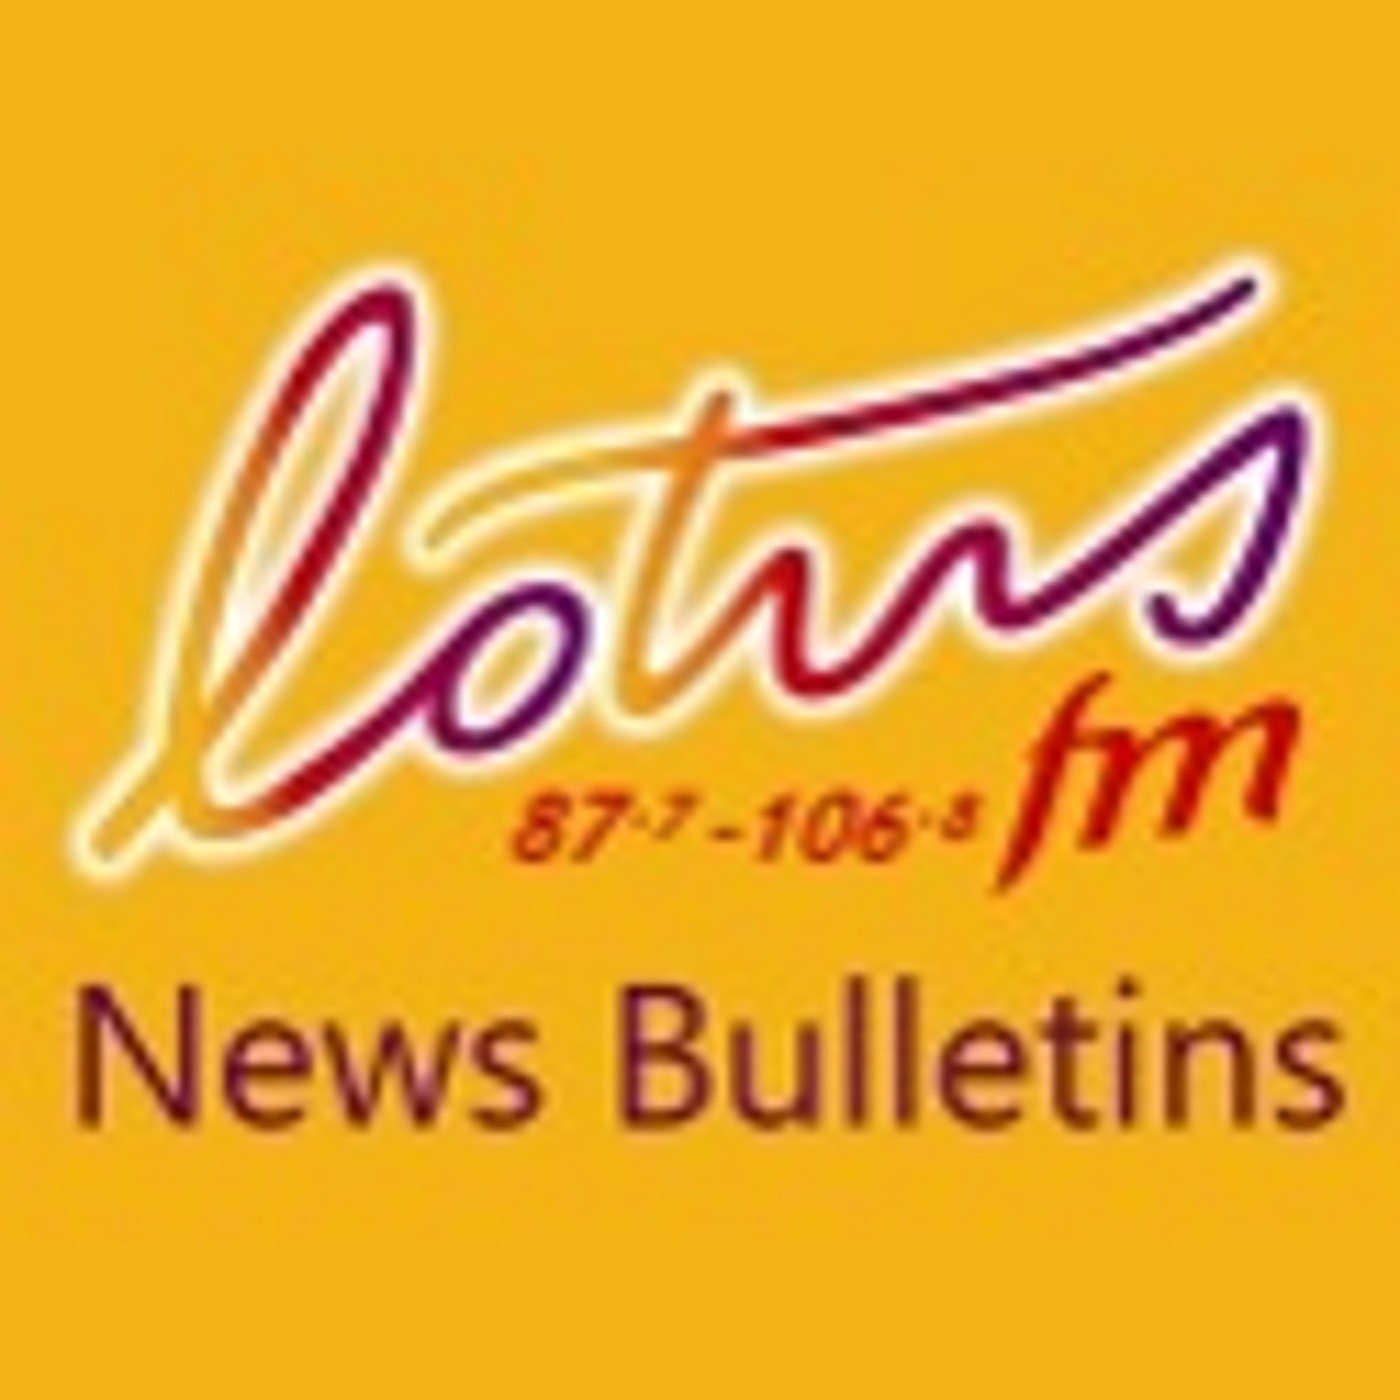 28 Nov Lotus News Bulletin 1pm by Navitha Gajraj